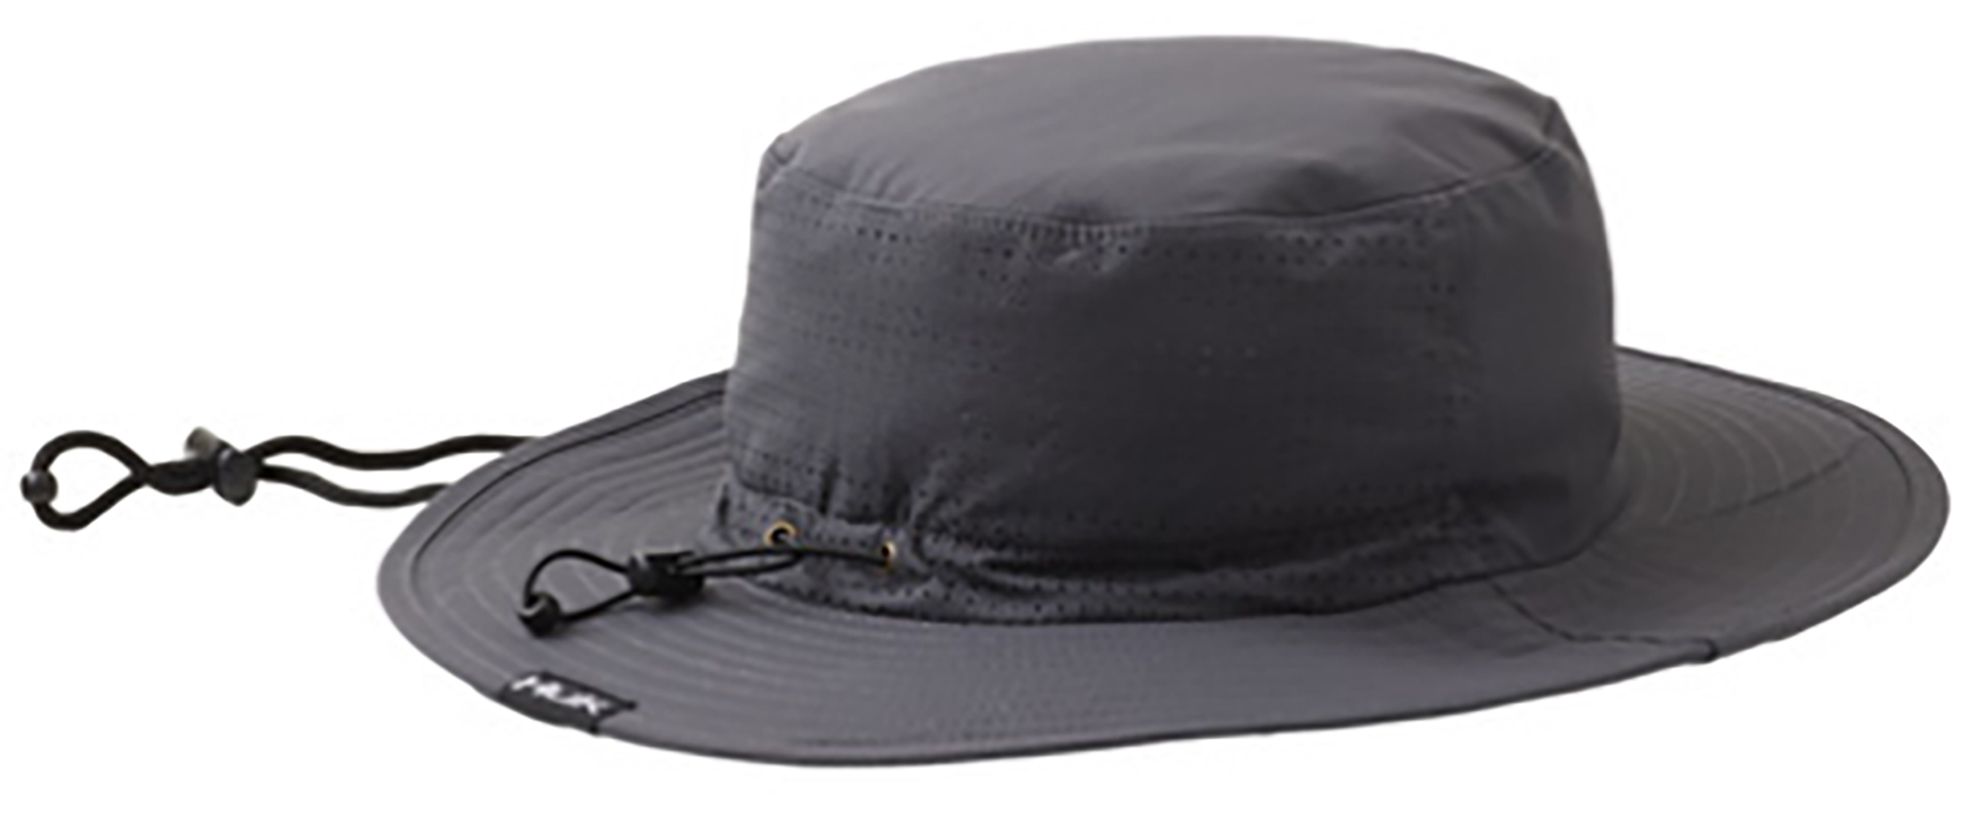 Huk Men's Logo Boonie Hat